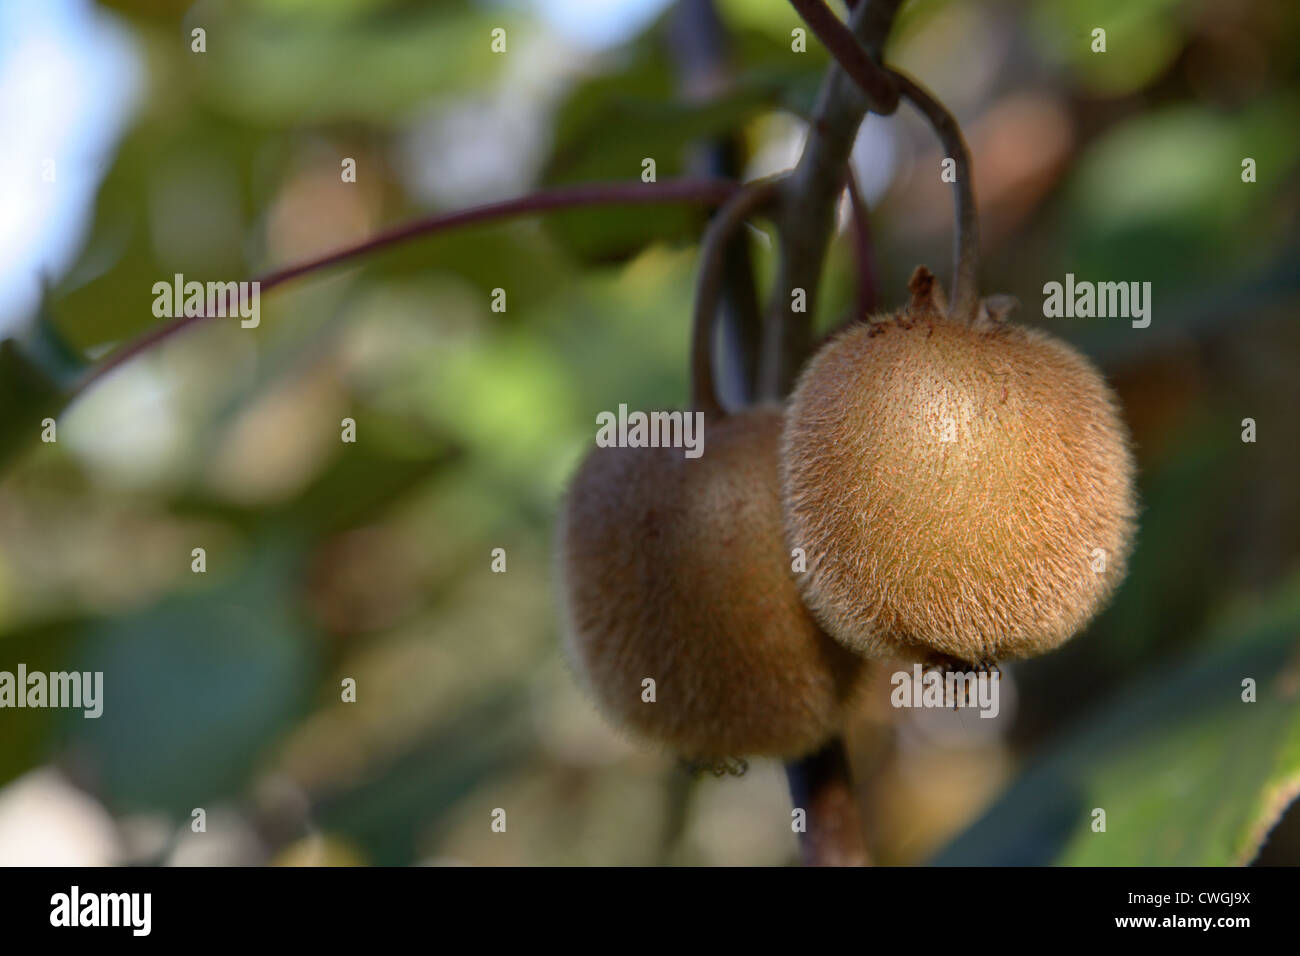 Kiwistrauch immagini e fotografie stock ad alta risoluzione - Alamy